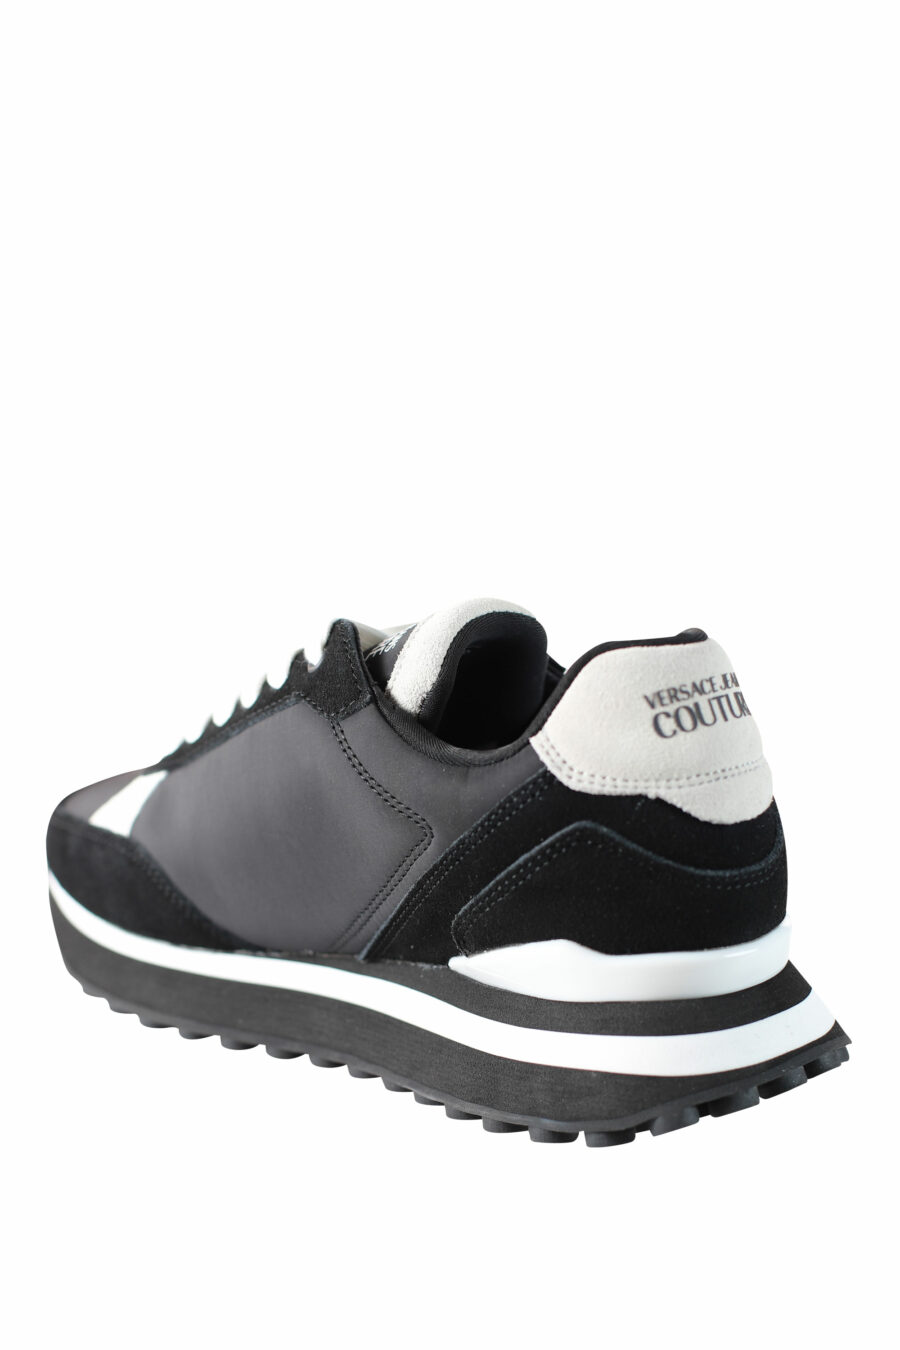 Zapatillas negras con beige "spyke" con logo blanco - IMG 4536